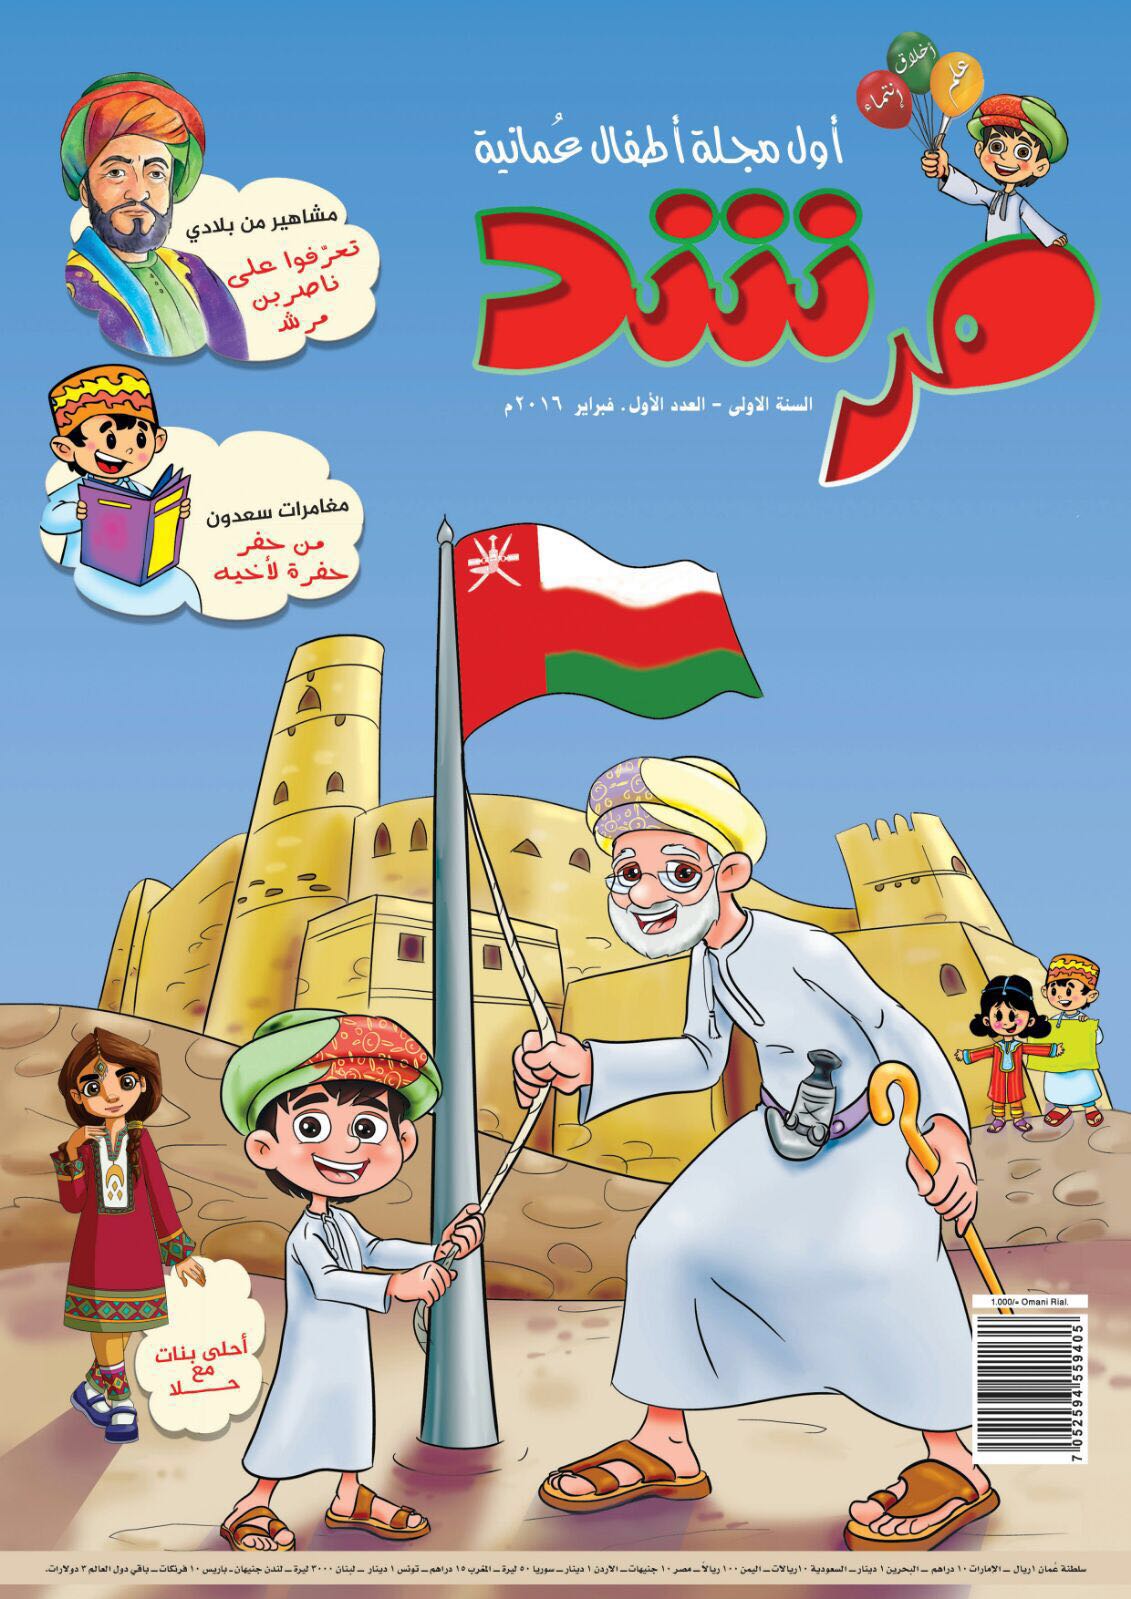 تدشين أول مجلة عمانية مخصصة للأطفال "مرشد"